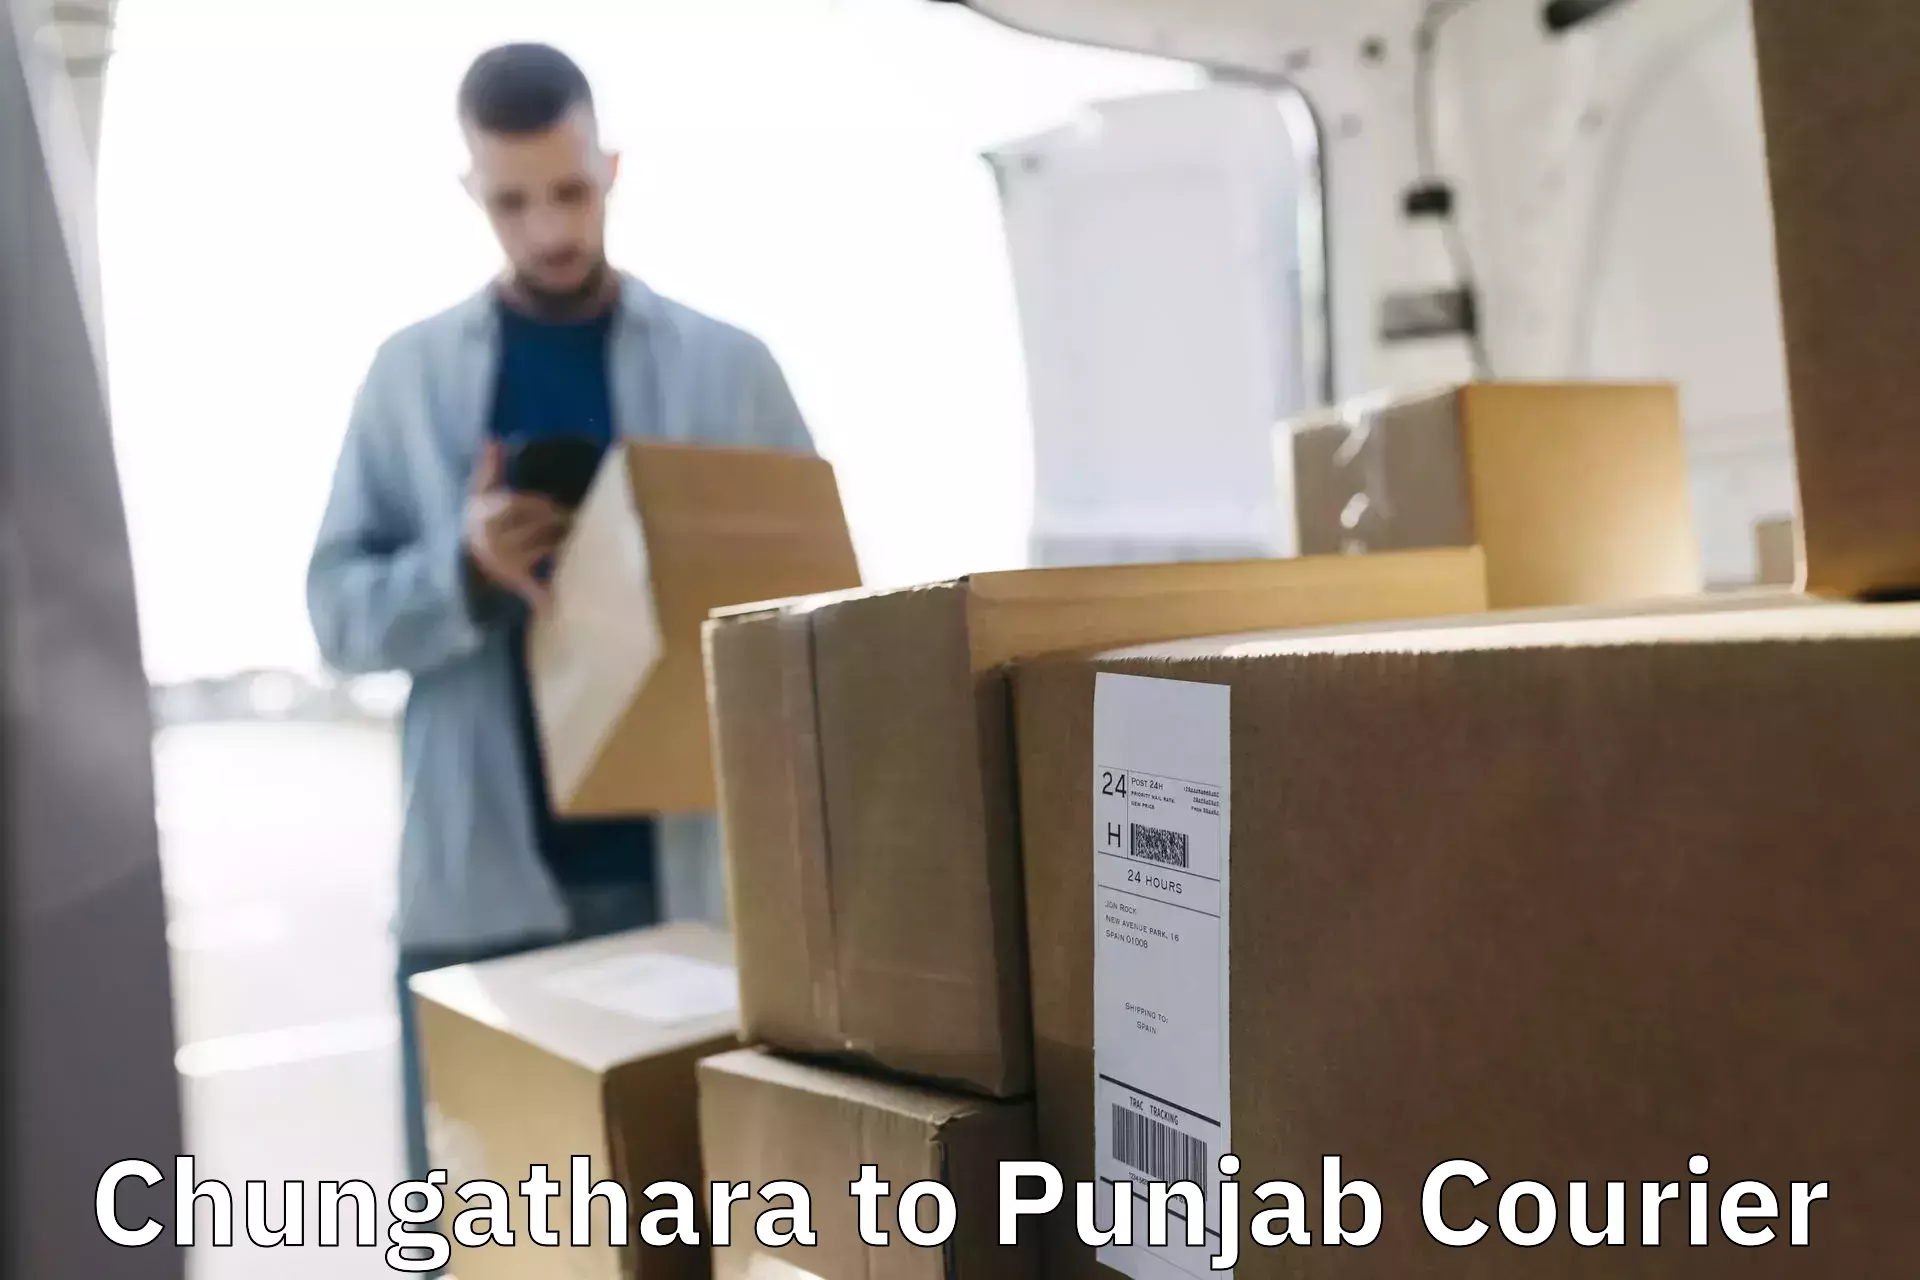 Bulk shipment Chungathara to Jalandhar